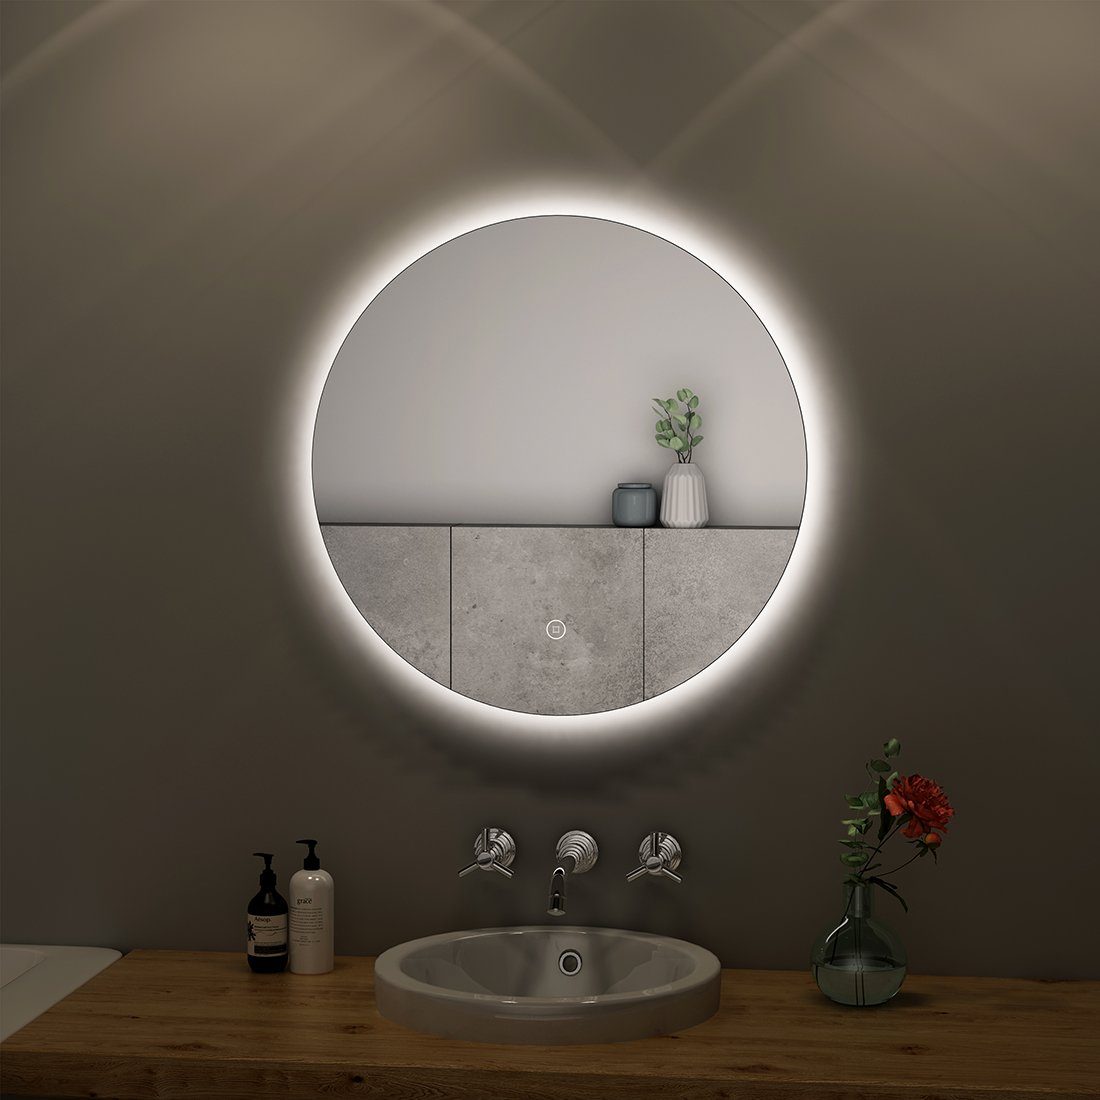 S'AFIELINA Badspiegel Runder Badezimmerspiegel LED Badspiegel mit Beleuchtung, 50cm,Touch Schalter,Kaltweiß 6500K,IP44